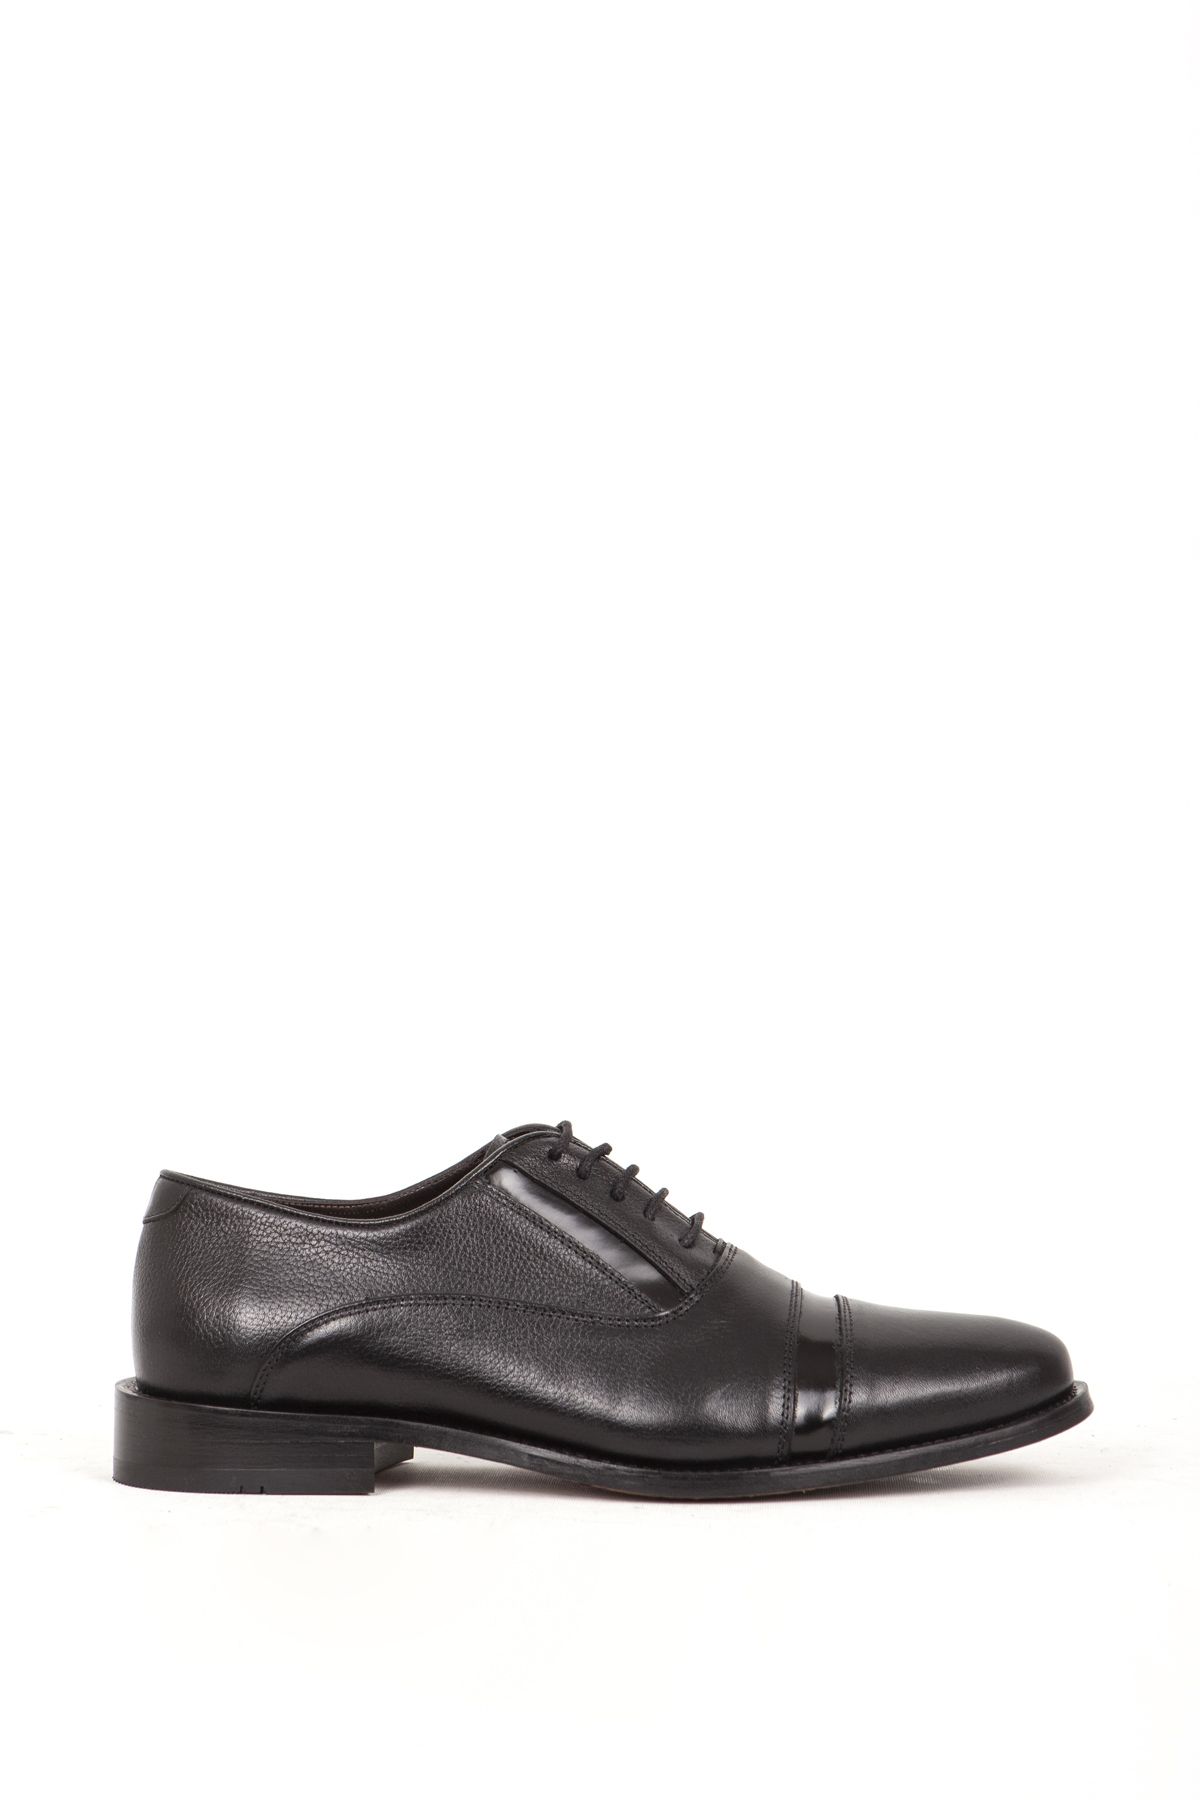 DANACI 359 Gerçek Deri Kösele Taban Erkek Klasik Ayakkabı Siyah